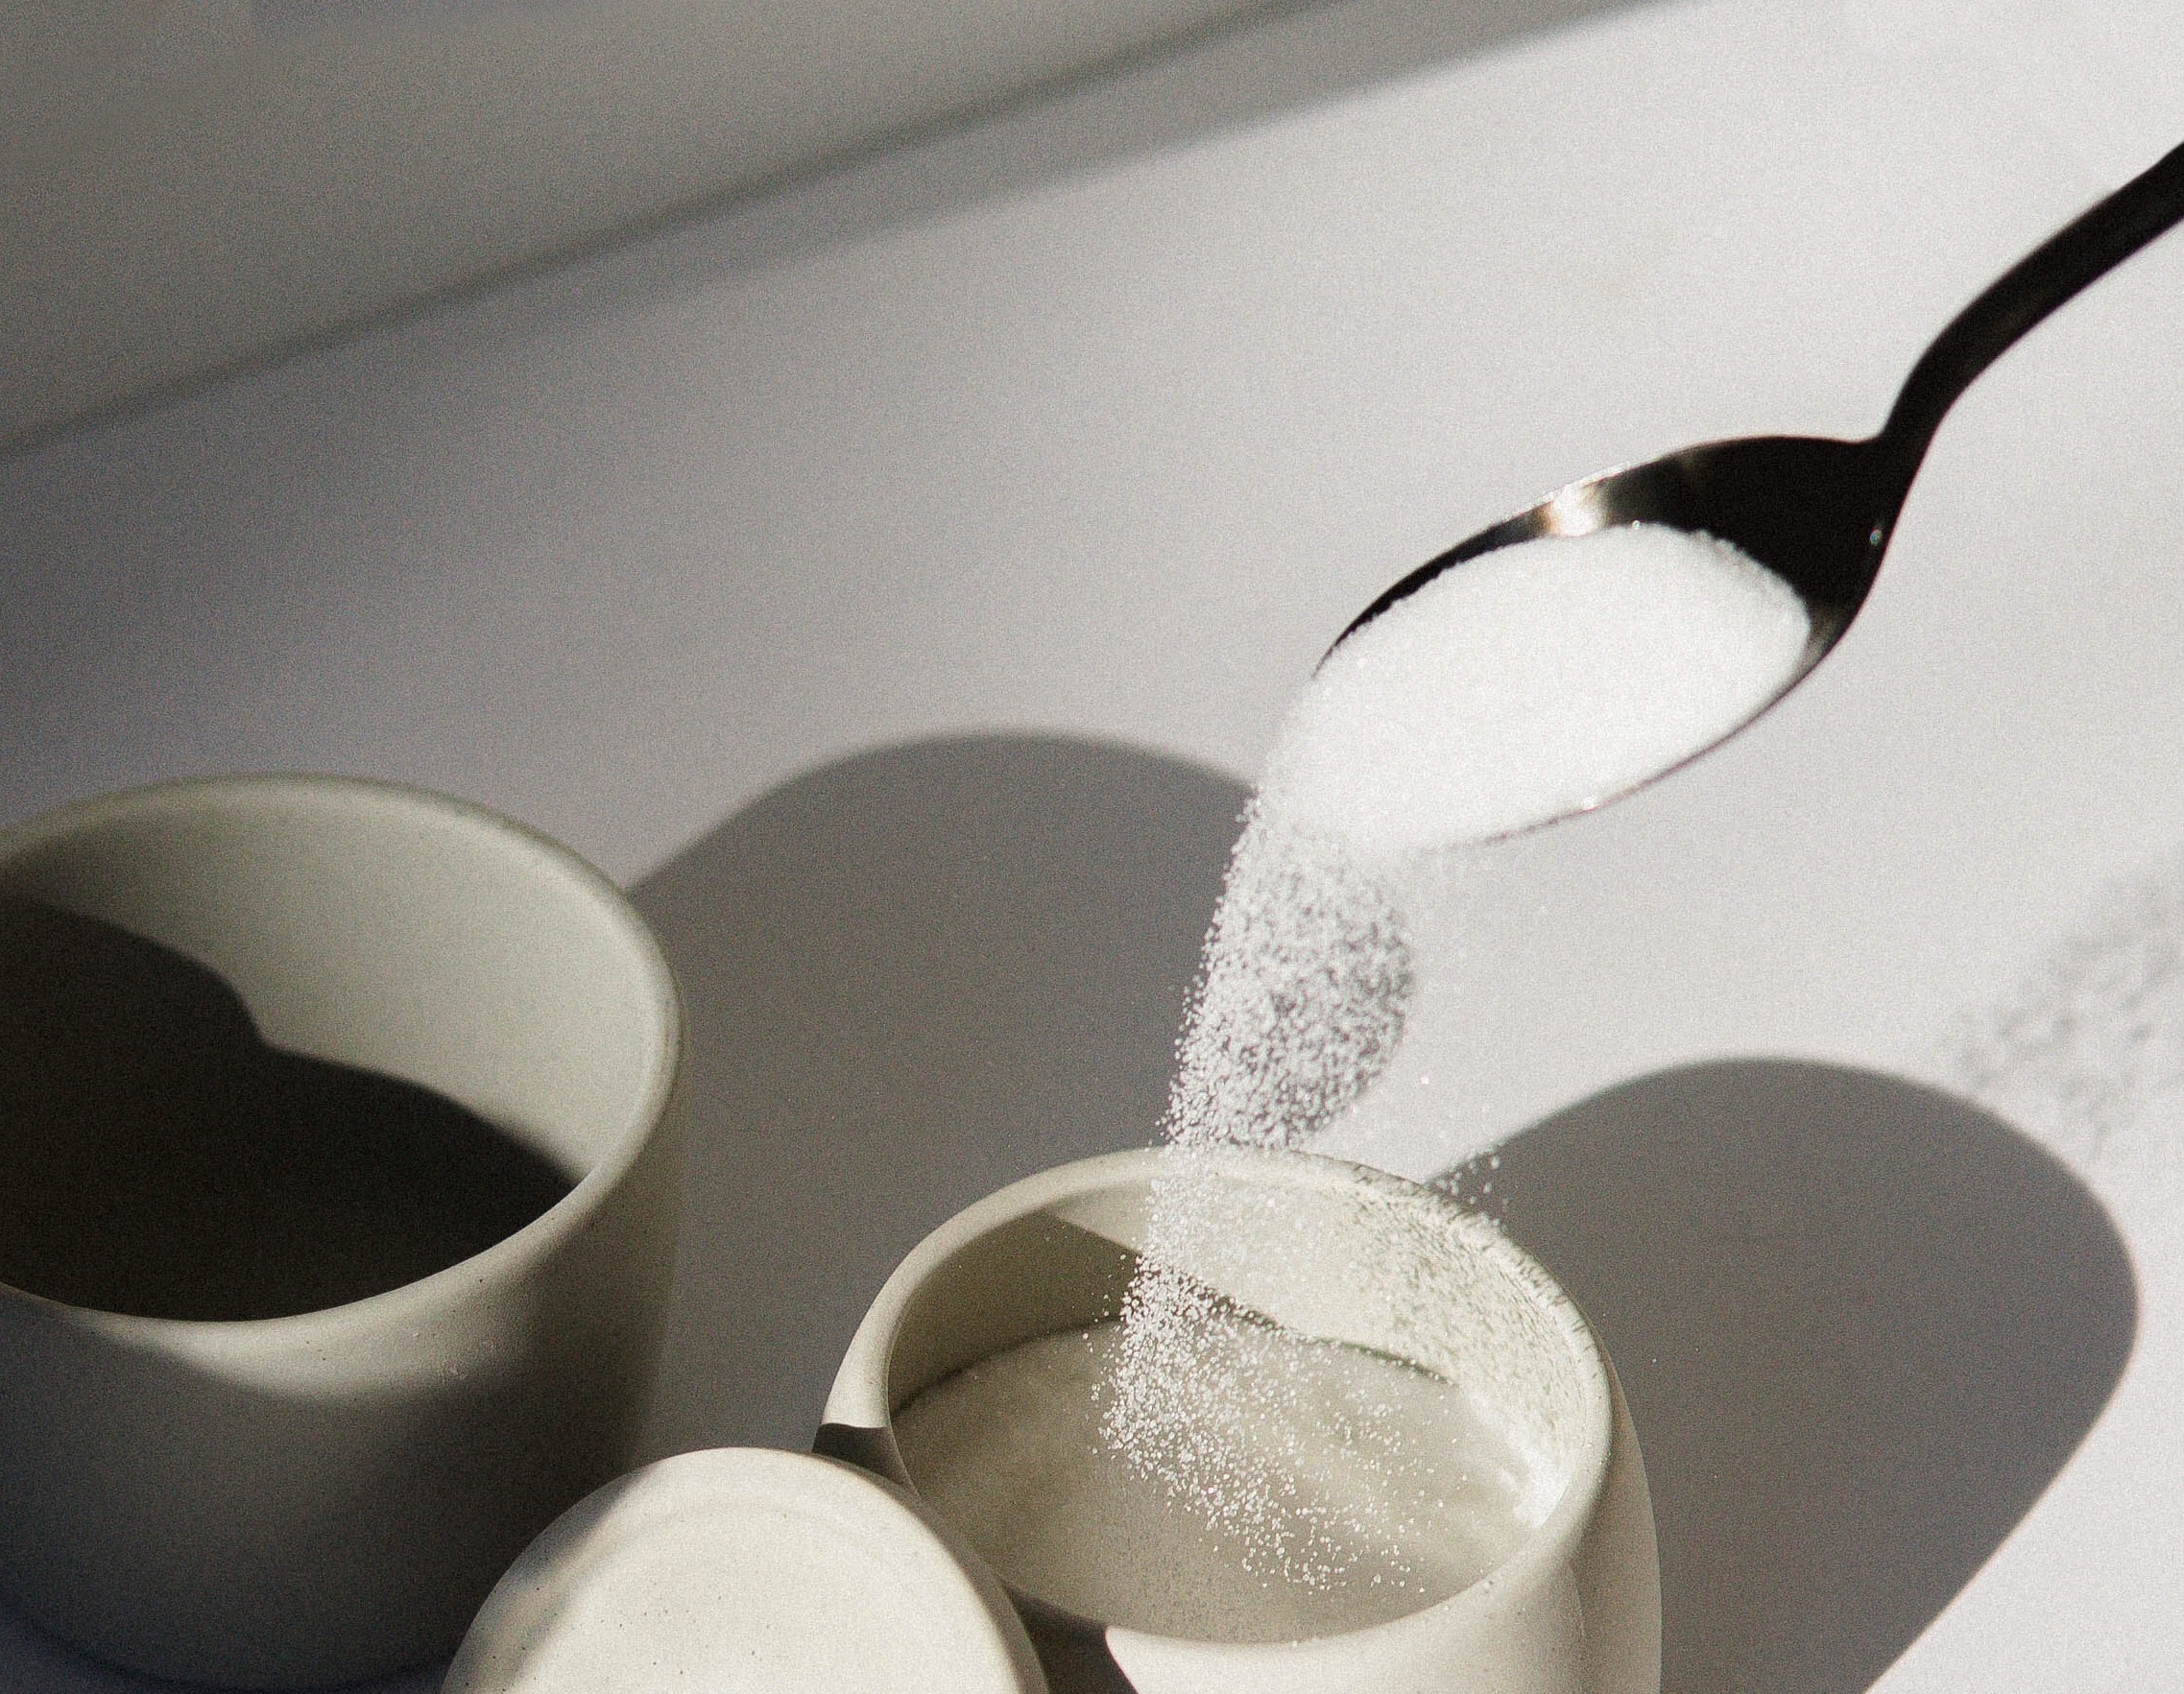 Spoon pouring surgar into a sugar bowl.